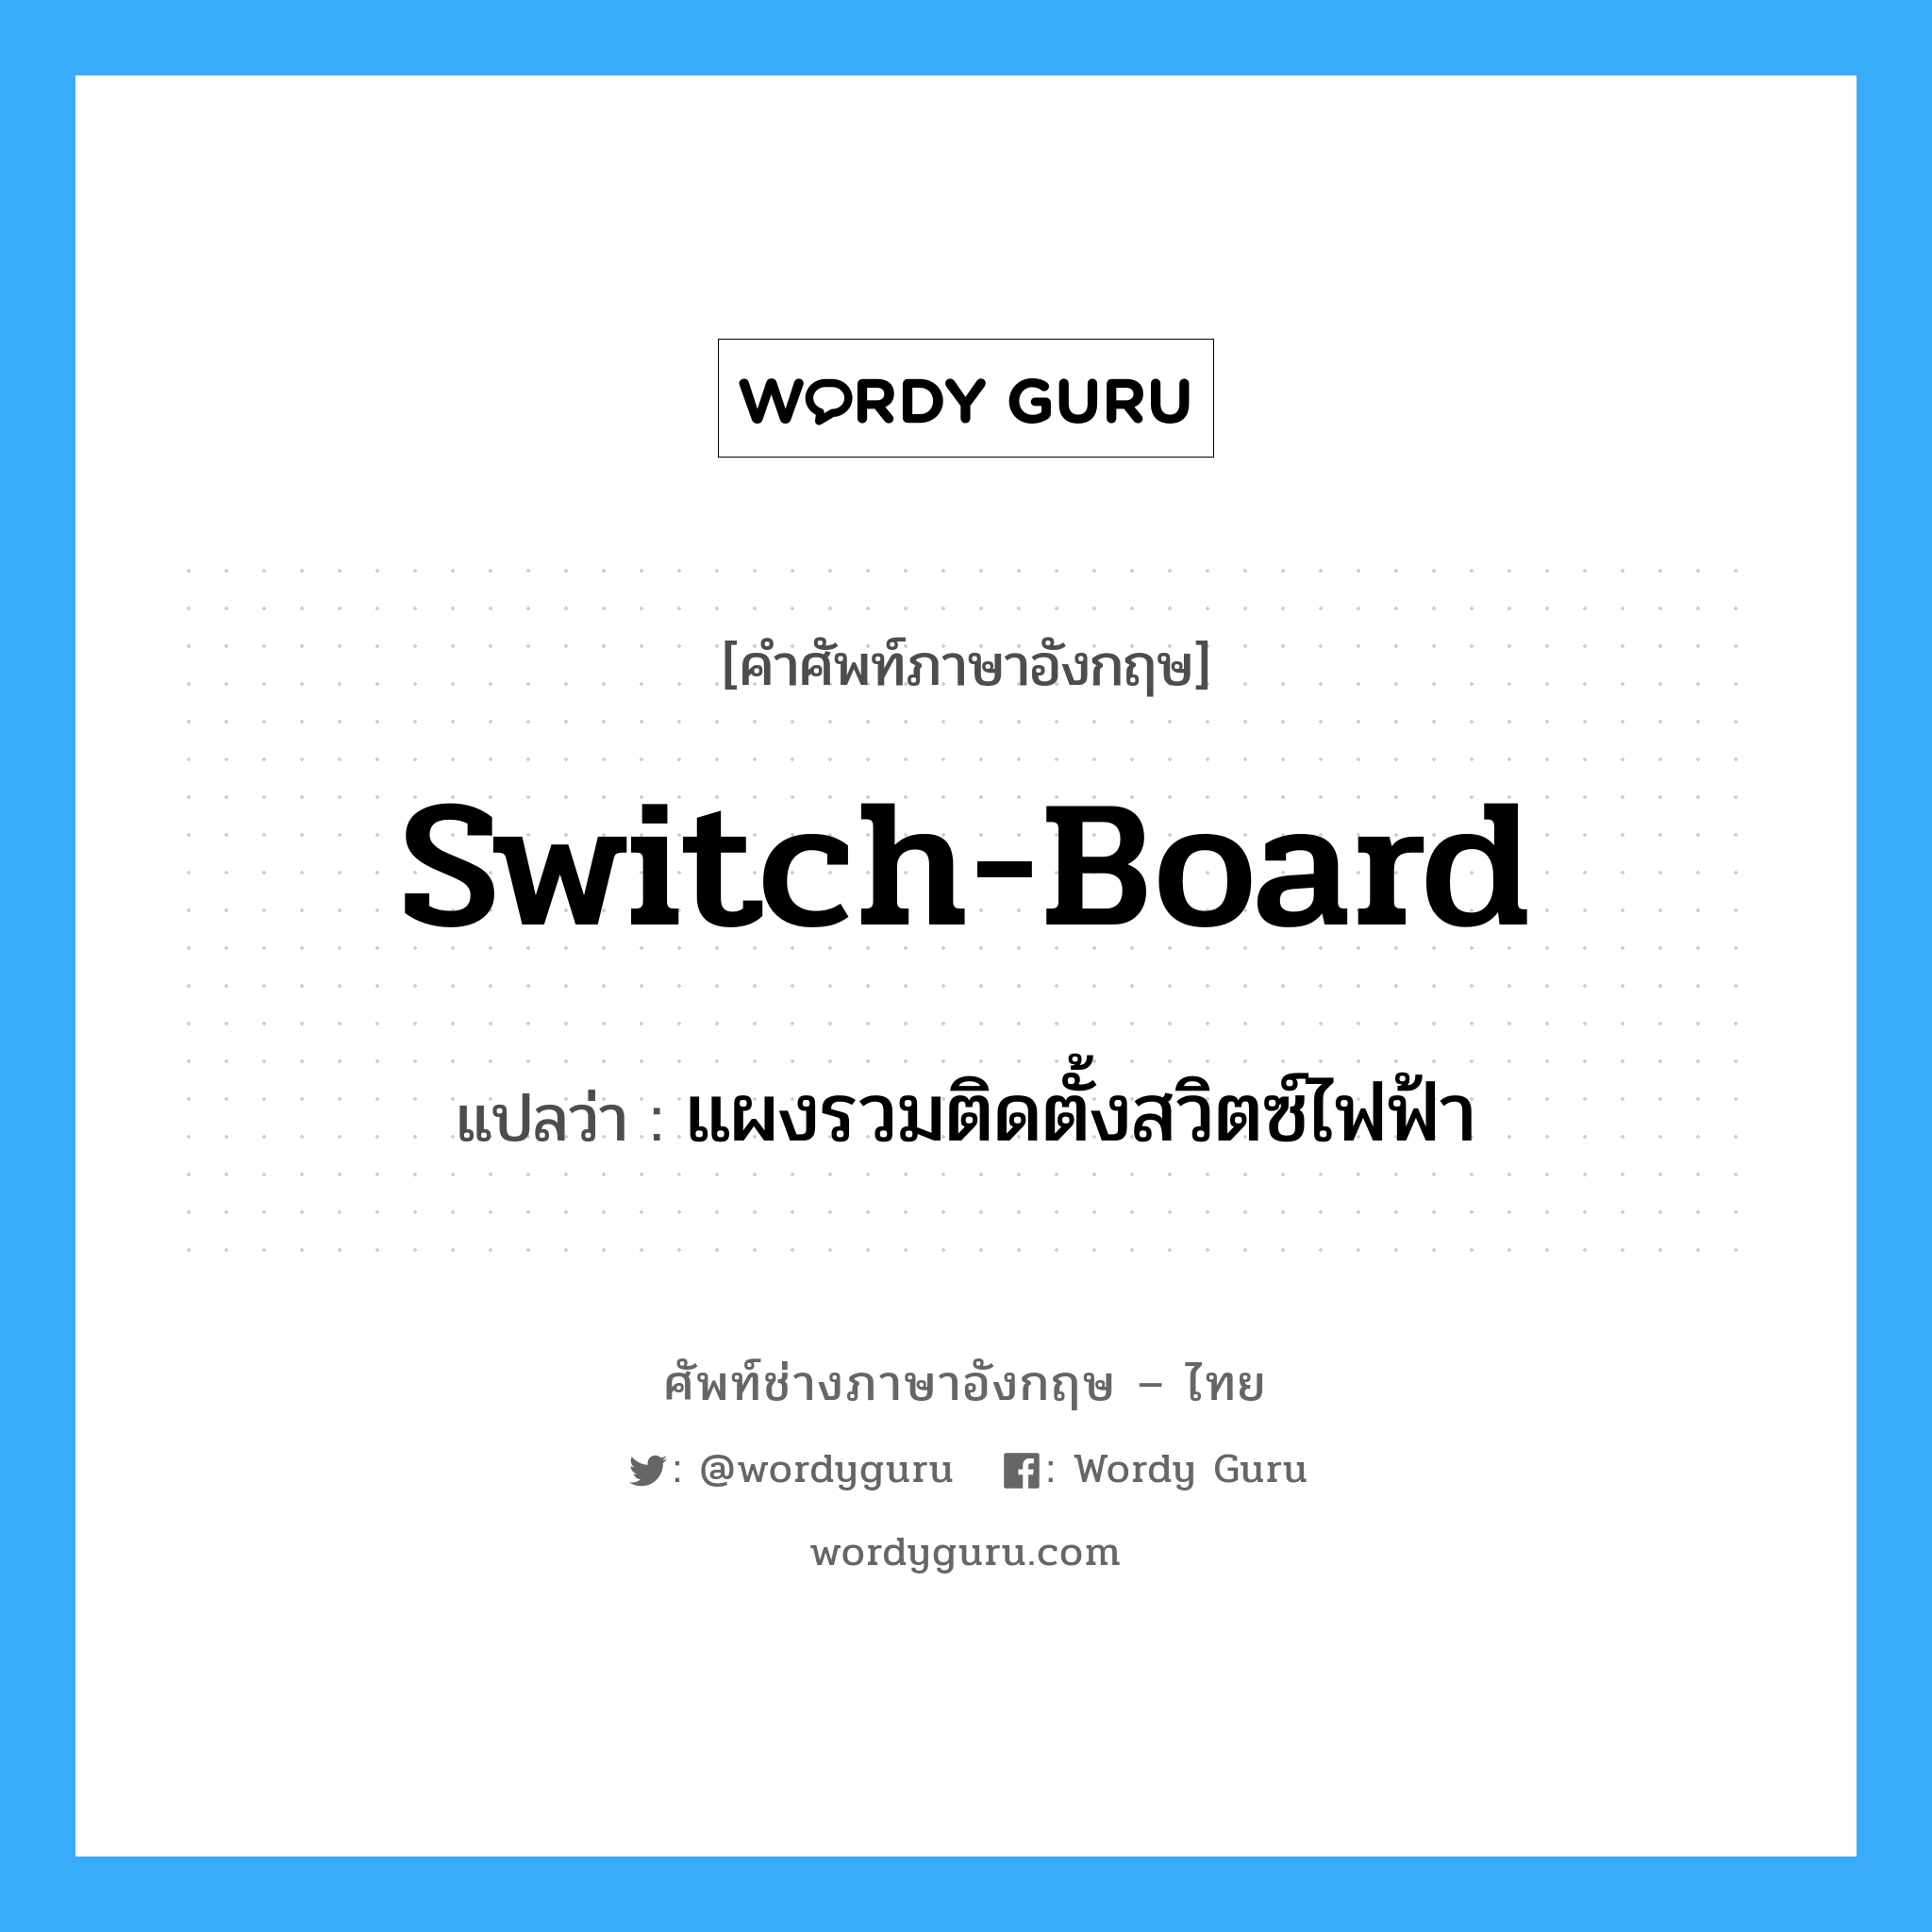 switch-board แปลว่า?, คำศัพท์ช่างภาษาอังกฤษ - ไทย switch-board คำศัพท์ภาษาอังกฤษ switch-board แปลว่า แผงรวมติดตั้งสวิตซ์ไฟฟ้า